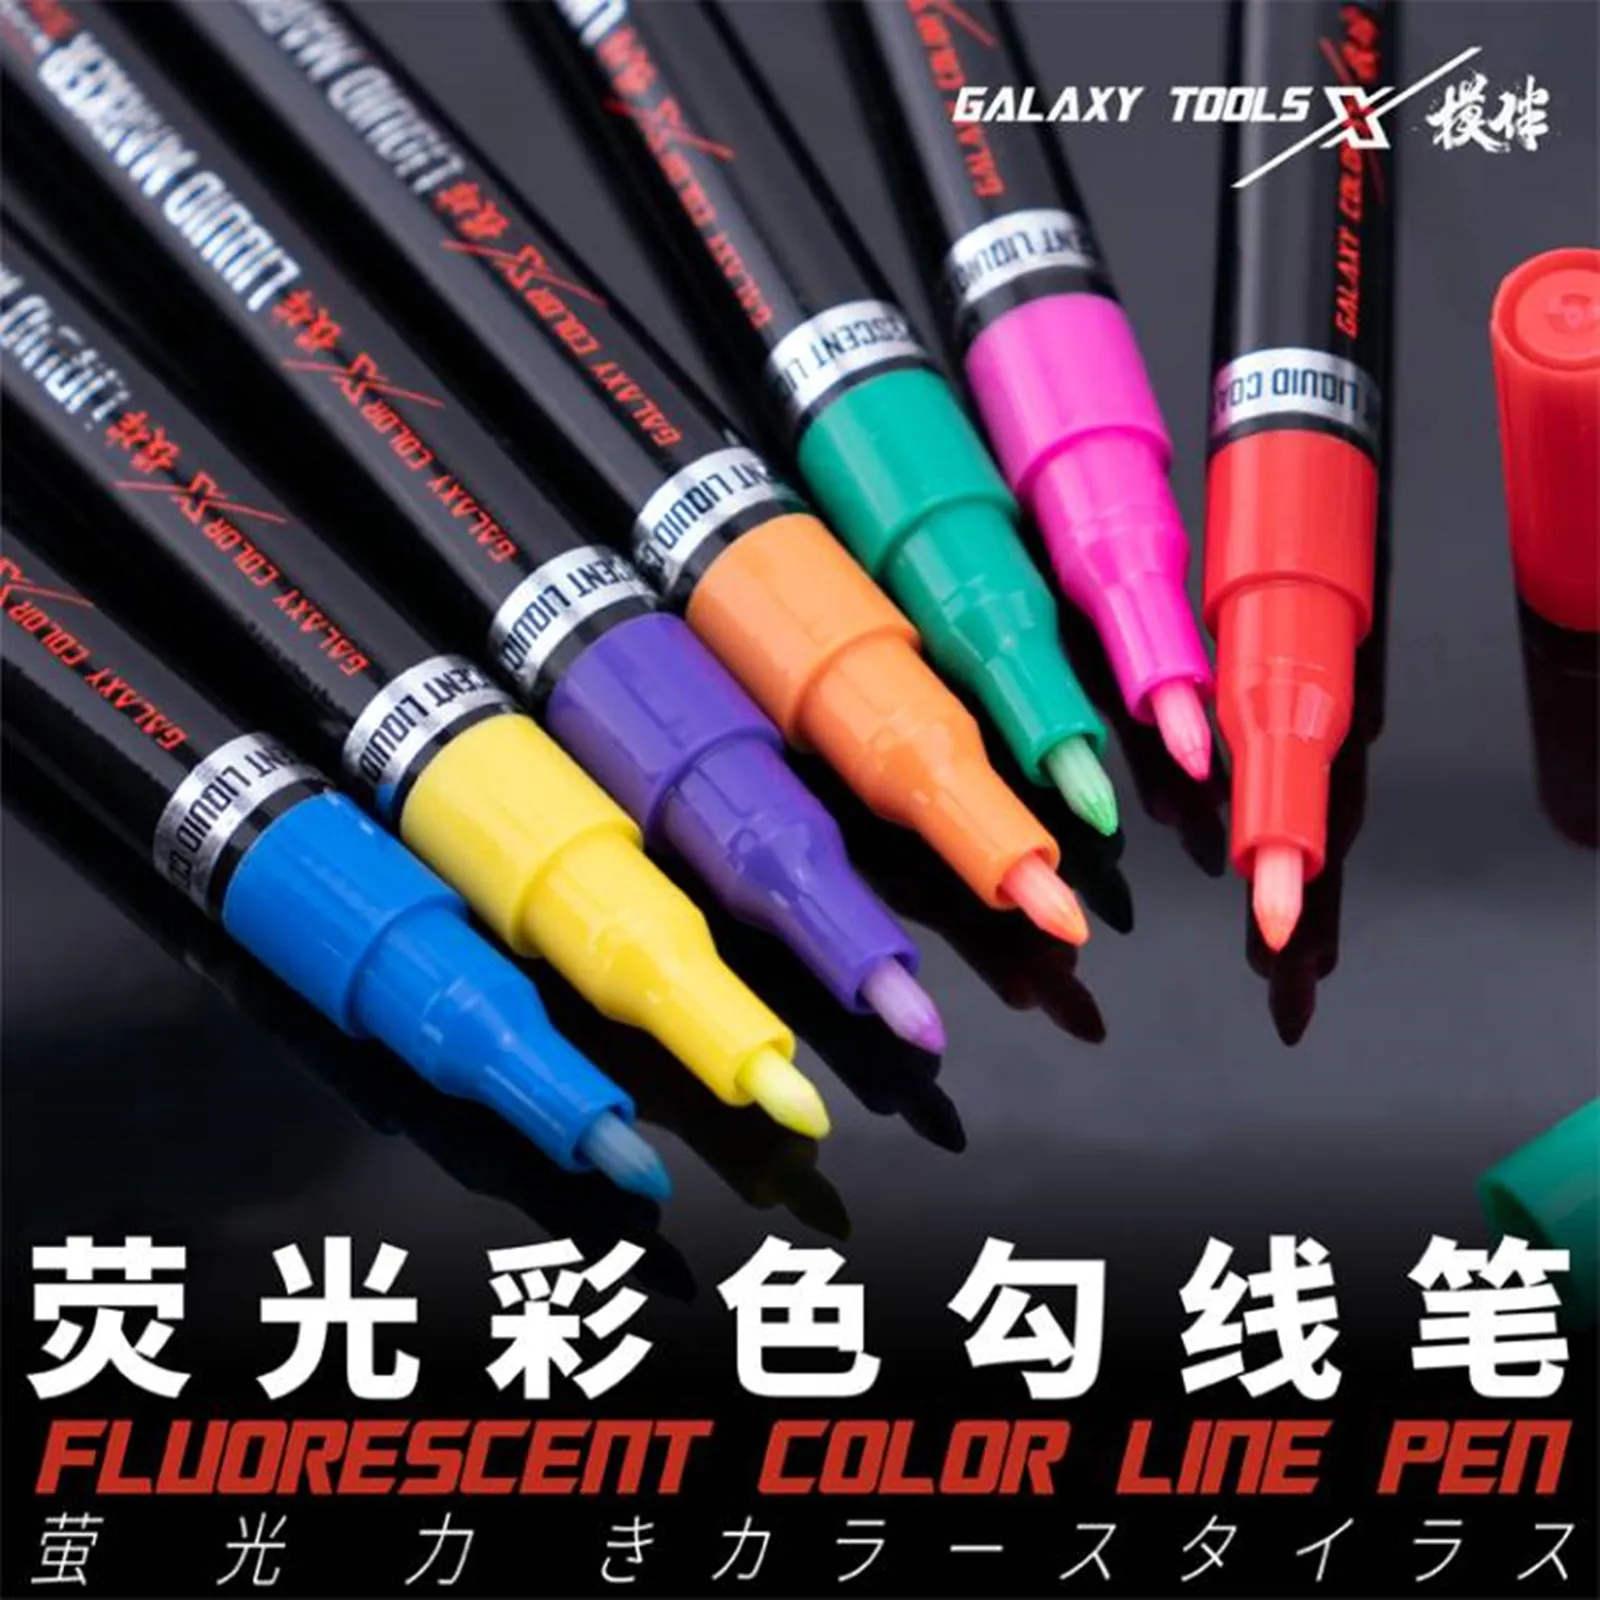 

Фломастеры Galaxy Tools T07C04 ~ 10 флуоресцентных цветов, перьевые маркеры для модели Gundam, инструменты для творчества и рисования